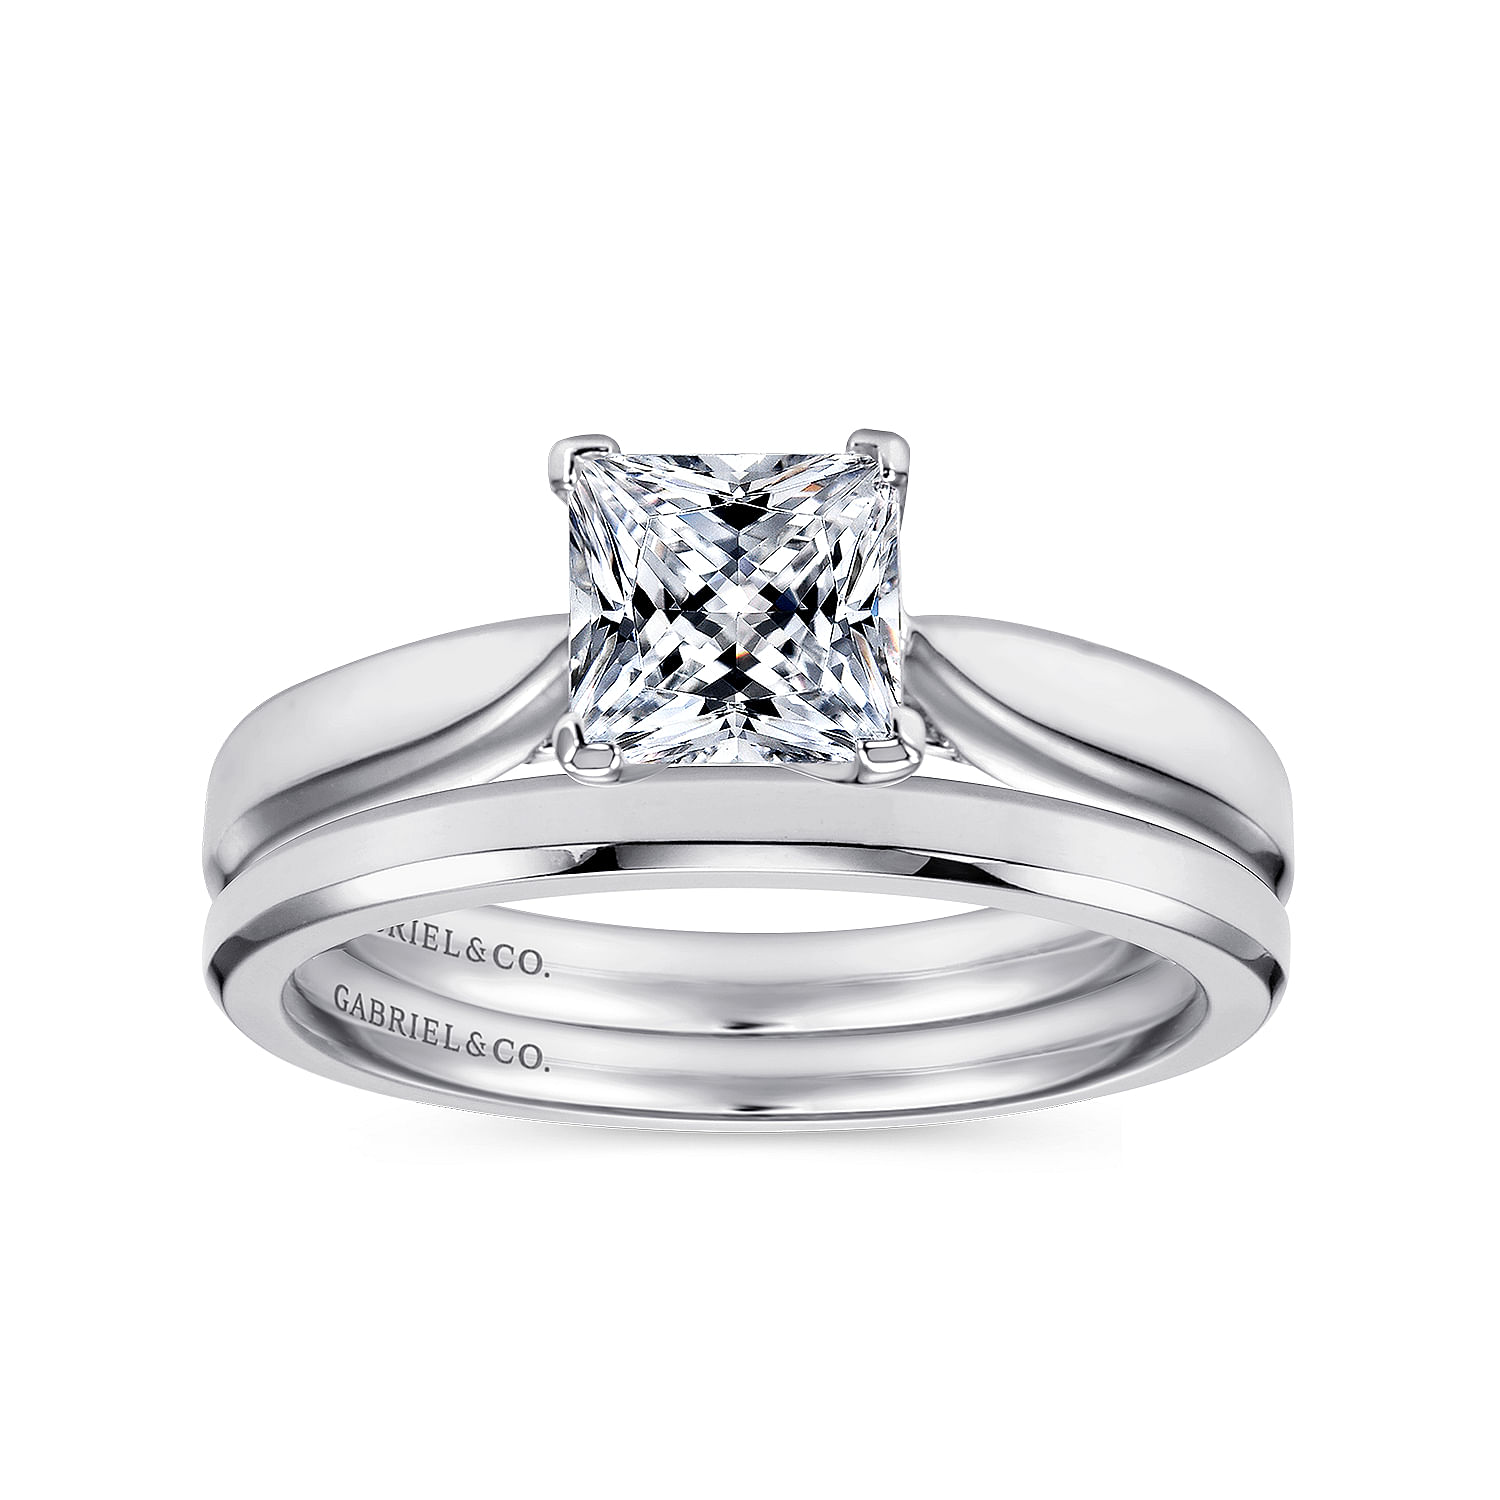 Jamie - 14K White Gold Princess Cut Diamond Engagement Ring - Shot 4